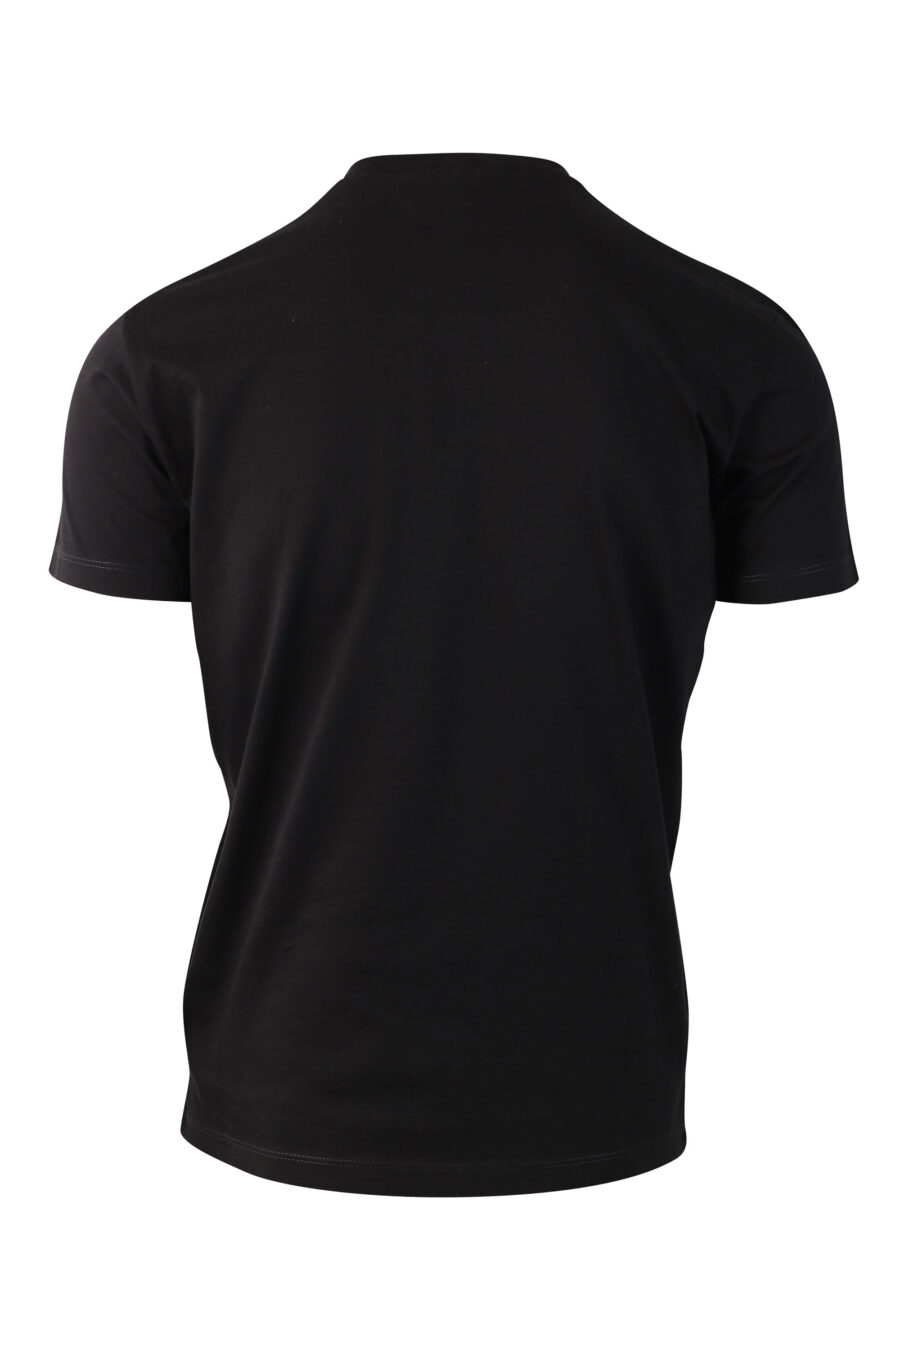 Schwarzes T-Shirt mit Minilogue - IMG 9996